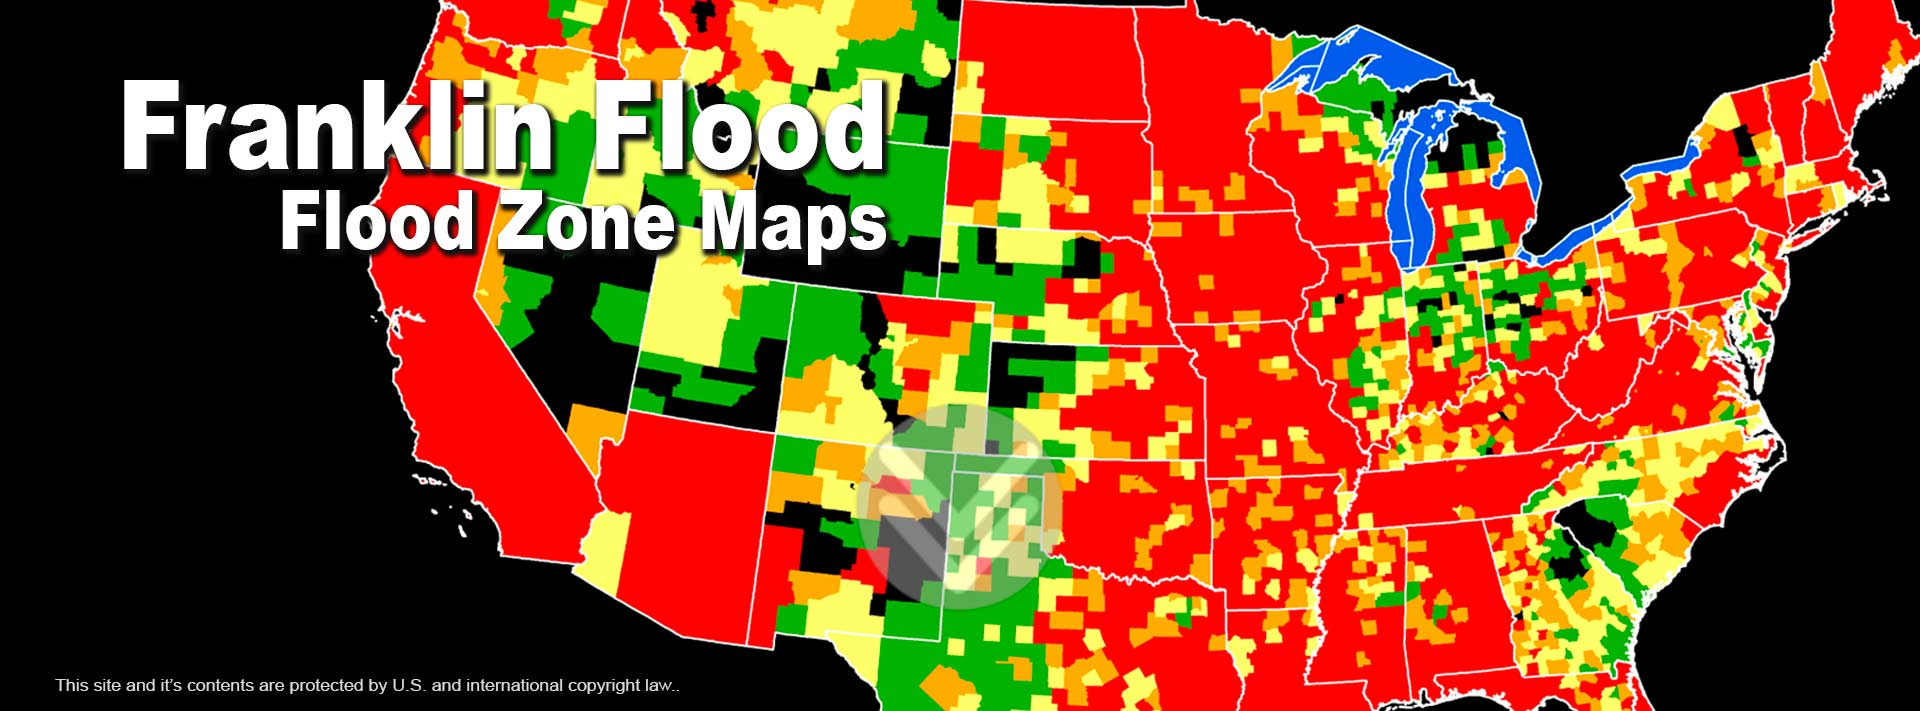 Flood Zone Rate Maps Explained - Florida Flood Zone Map